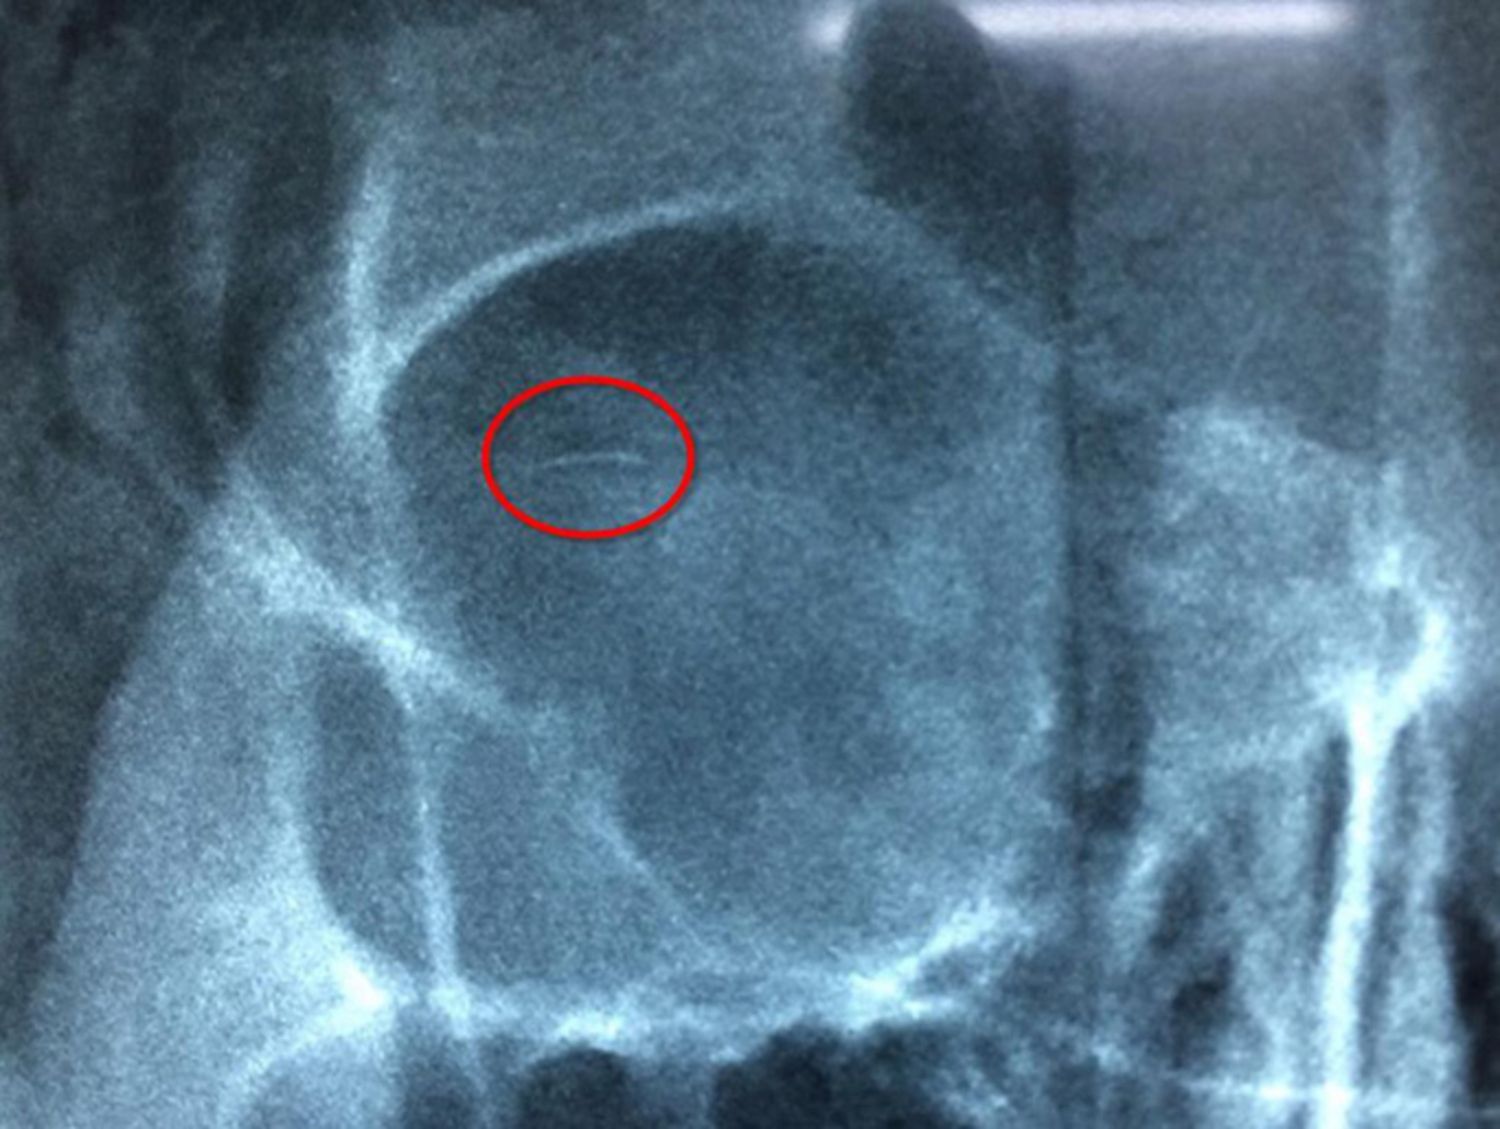 Kết quả chụp phim X-quang cho thấy có vật thể lạ giống như chiếc kim ở trong mắt của bệnh nhân